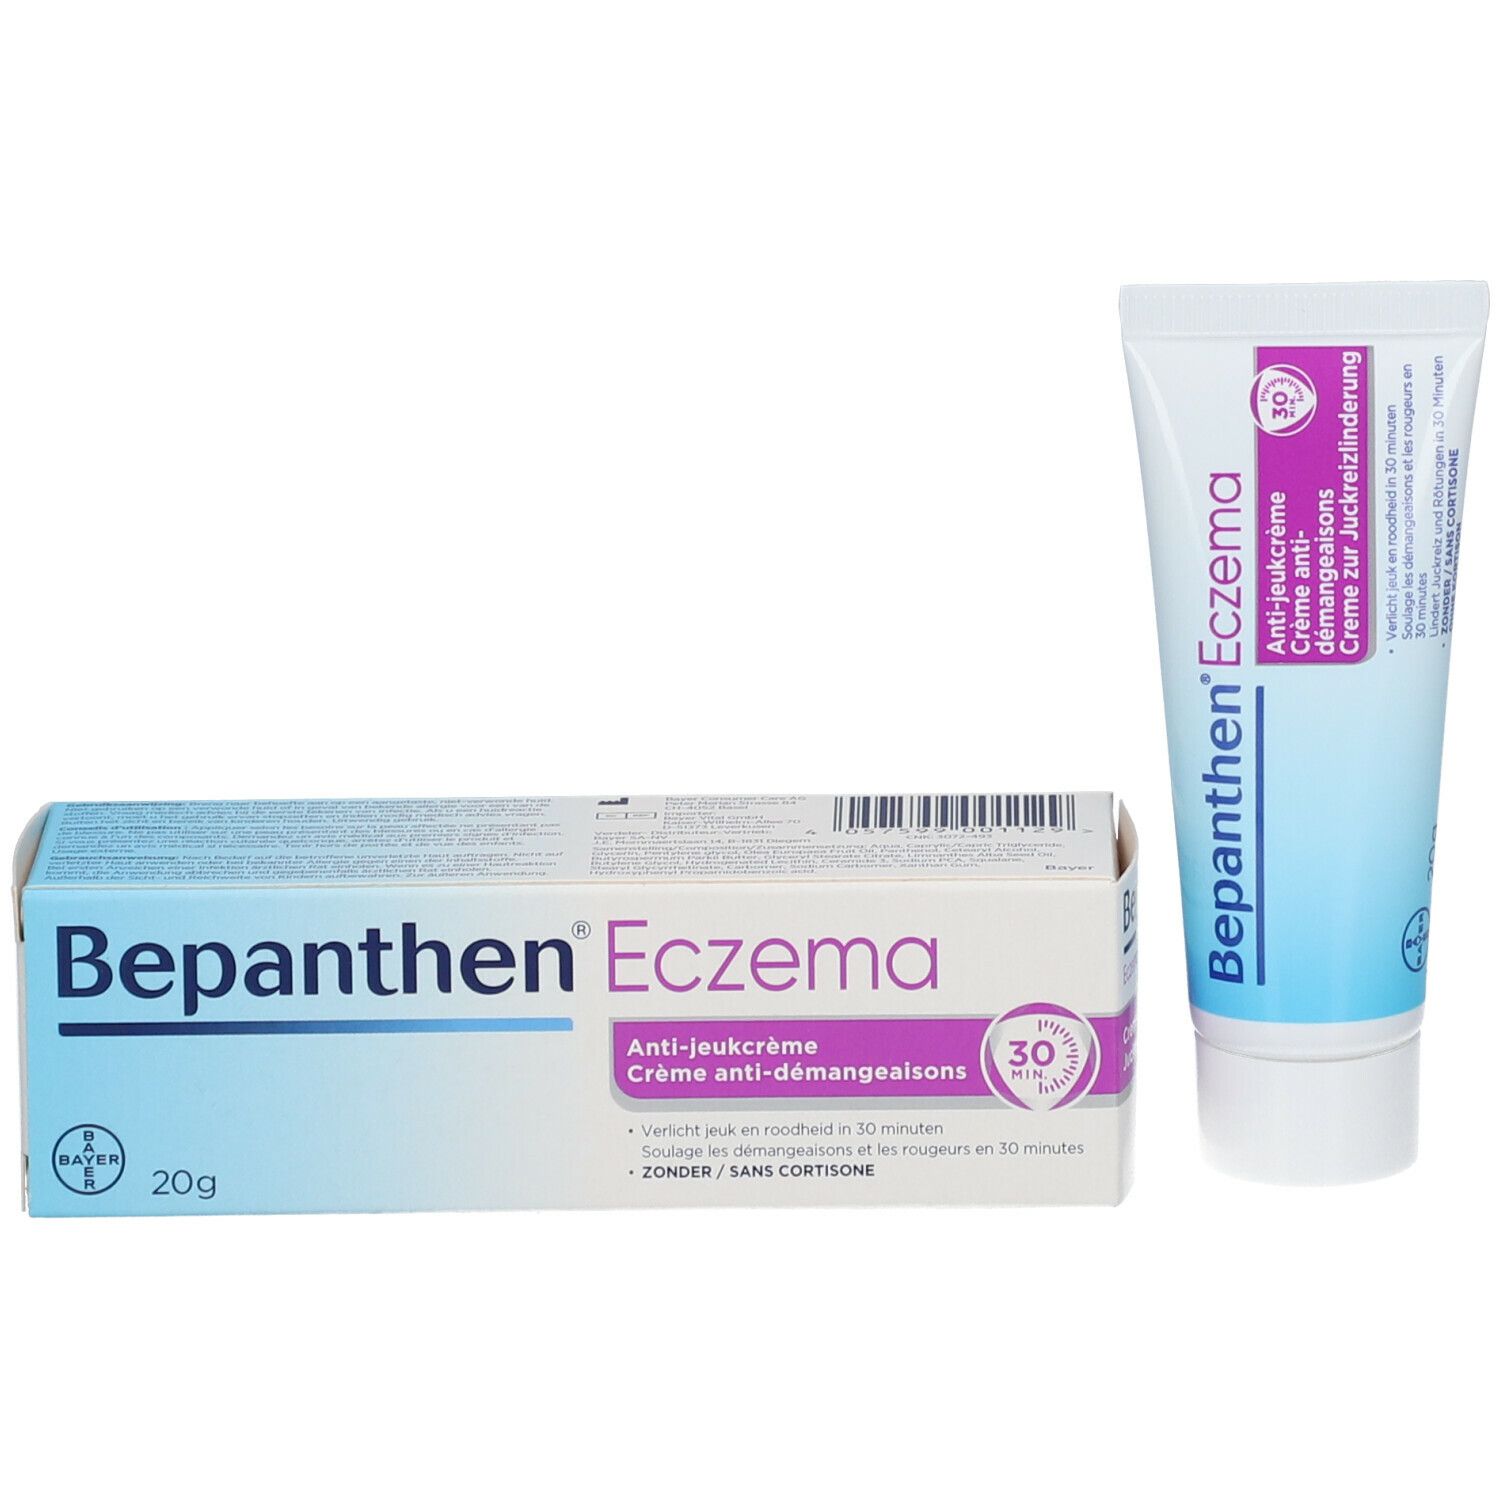 Bepanthen Sensicalm Crème Eczéma Anti-Démangeaisons sans Cortisone 20g